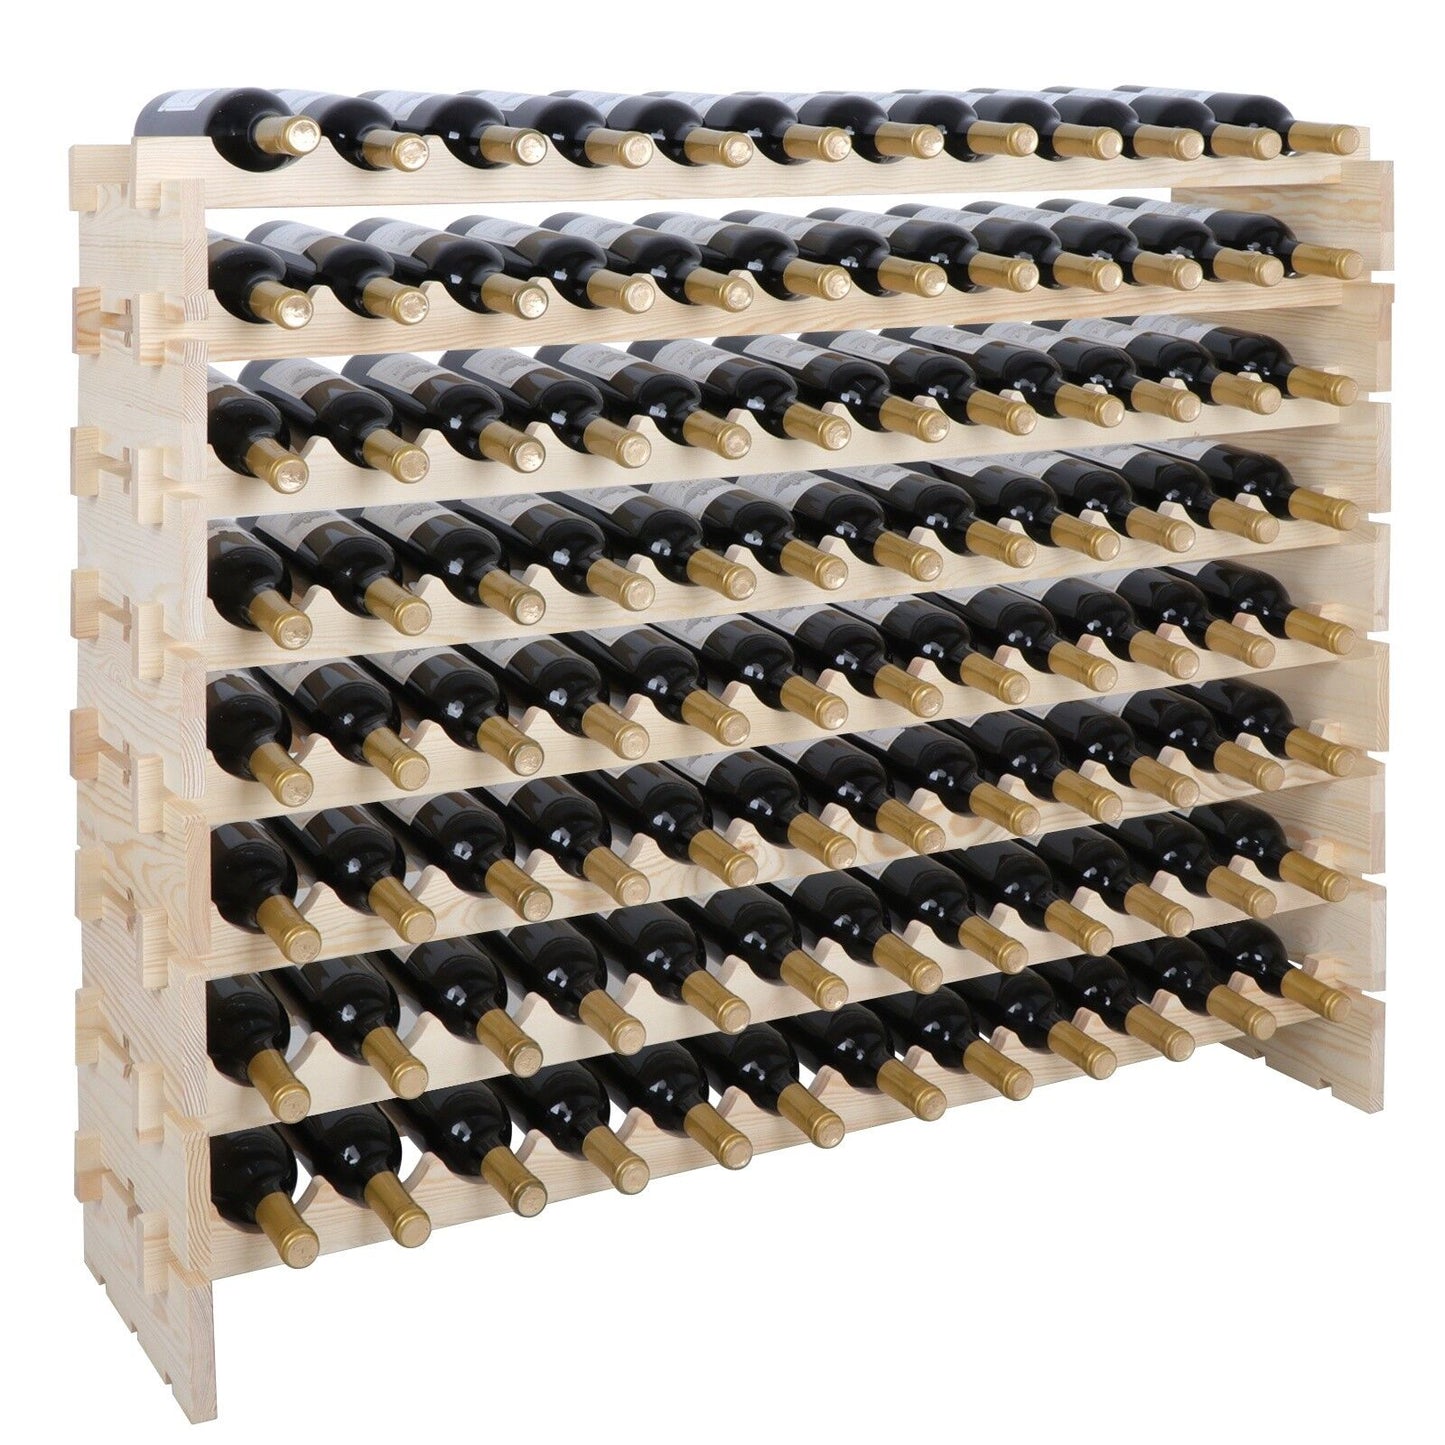 96 Bottles Holder Wine Rack Stackable Storage 8 Tier Solid Wood Display Shelves